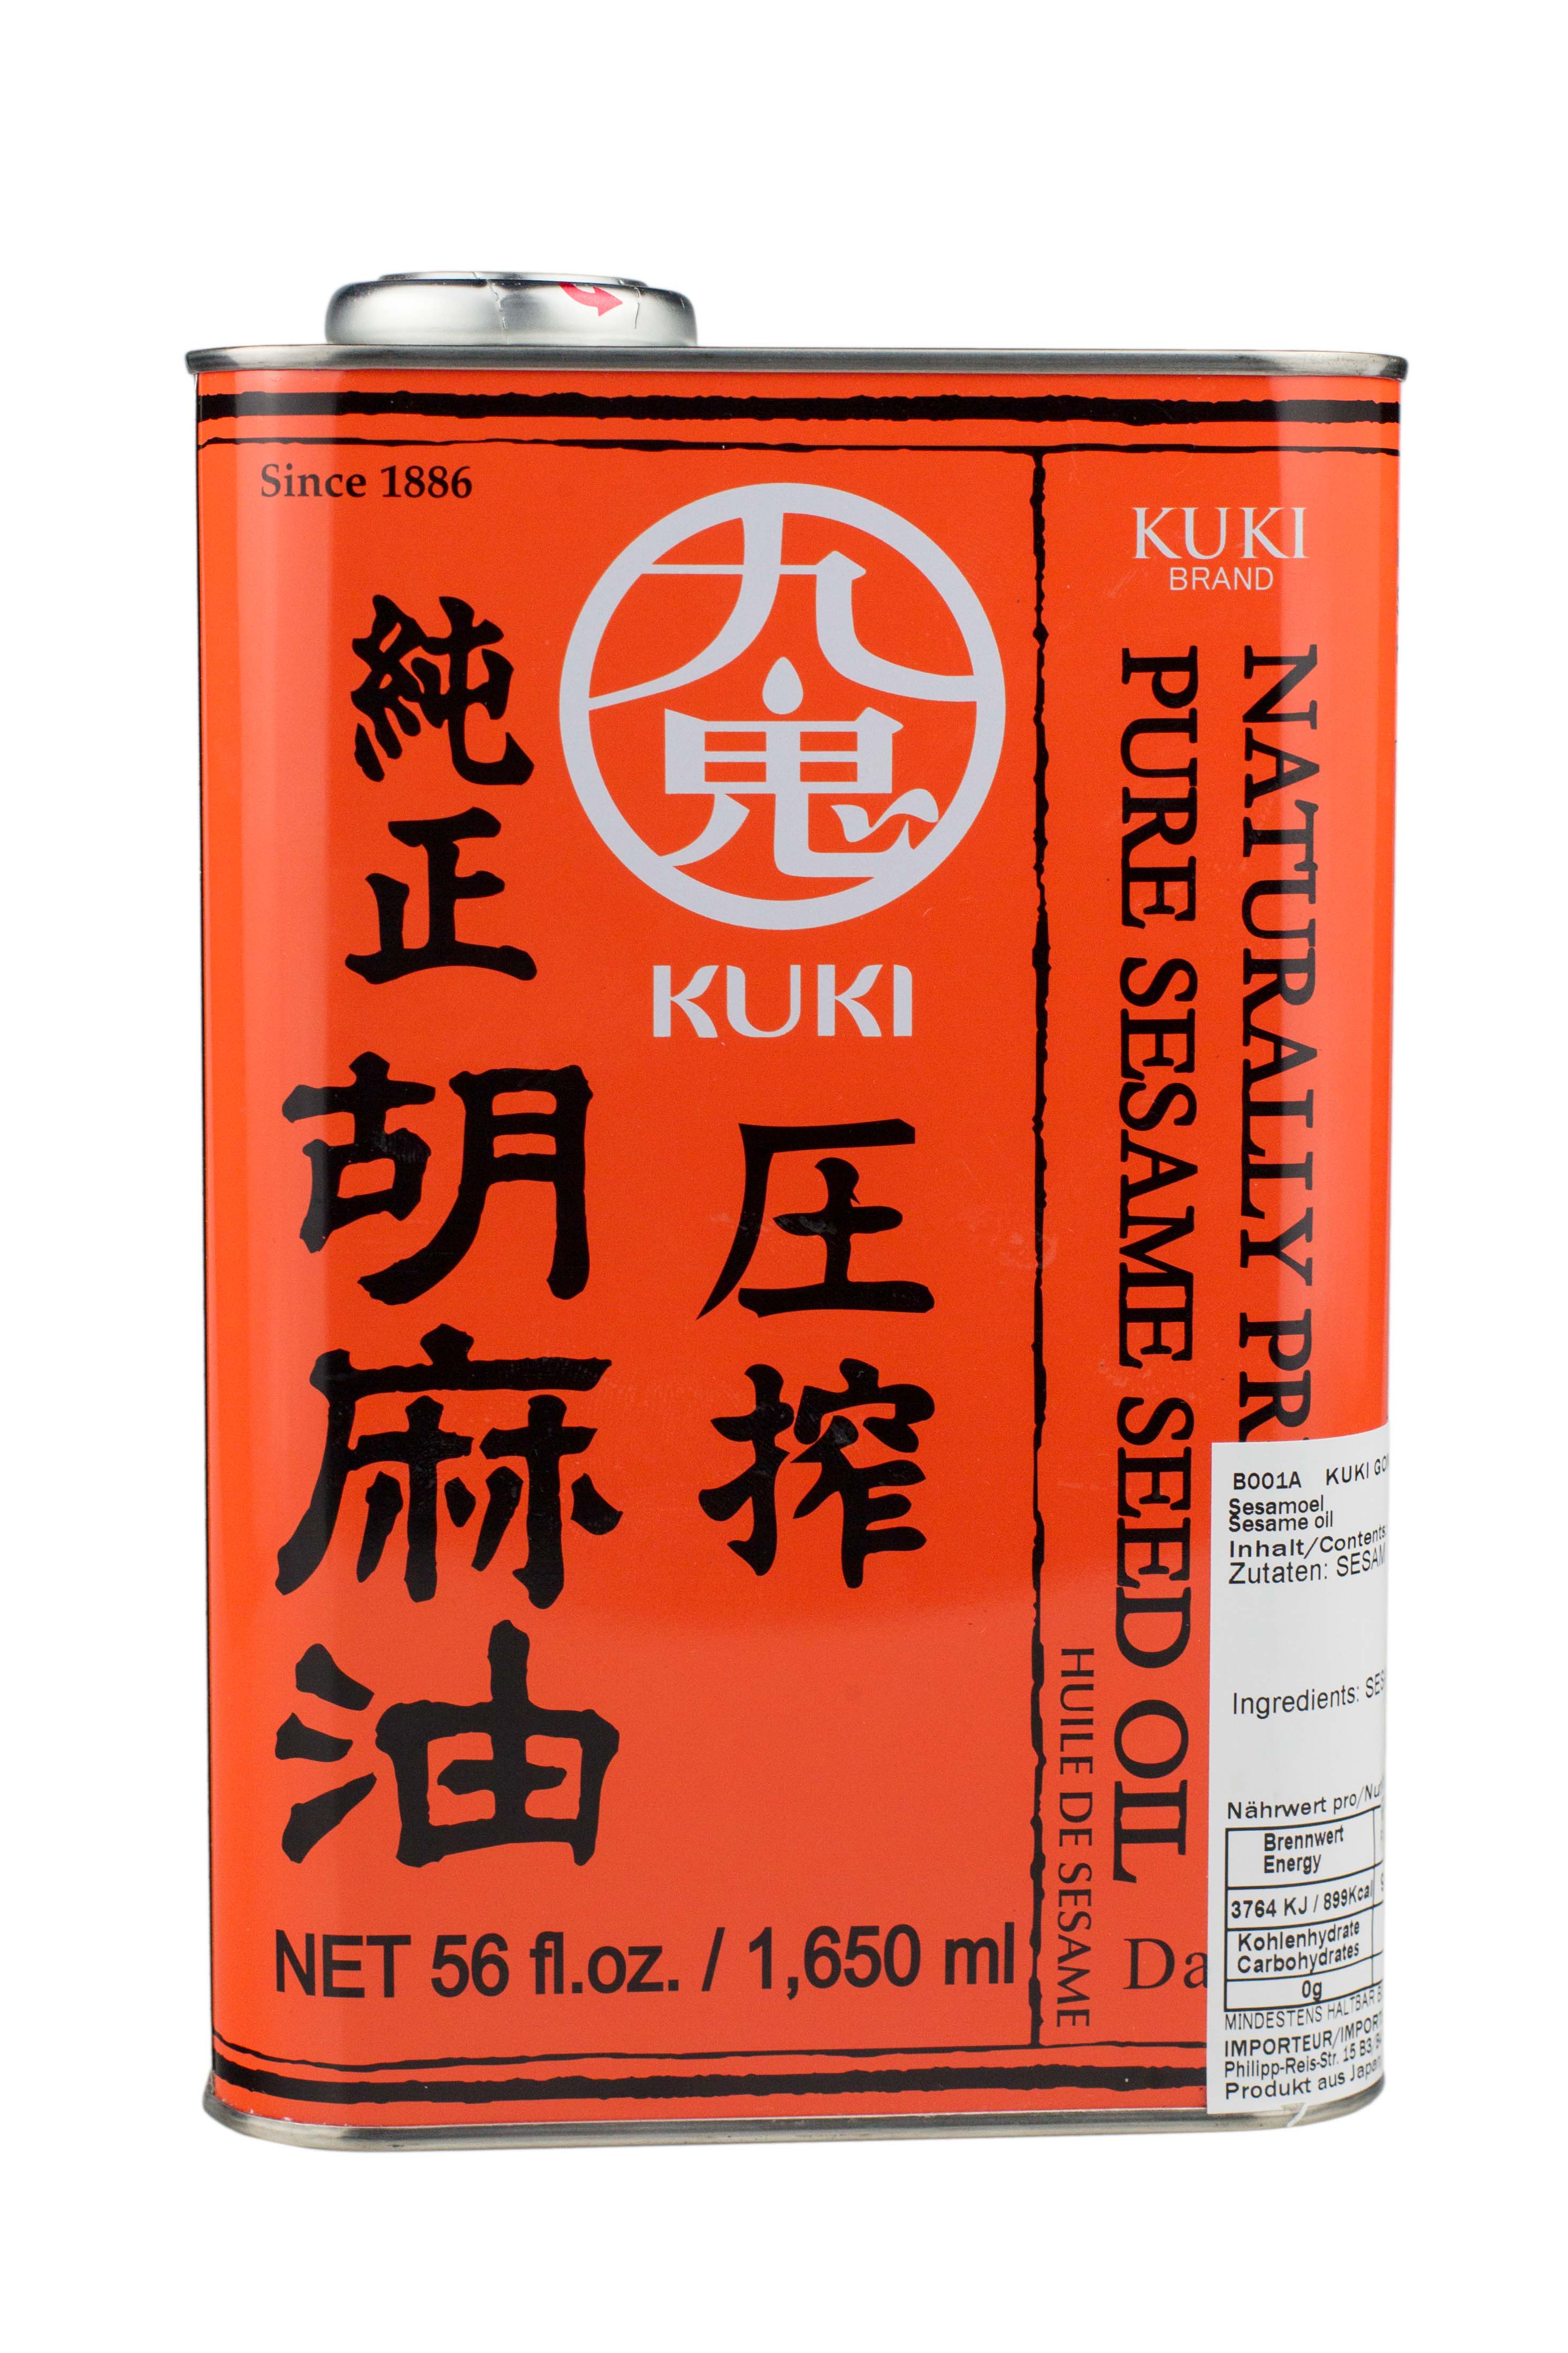 ULEI DE SUSAN PREMIUM, BRANDUL"KUKI", BIDON DE 1.65 L, JAPONIA